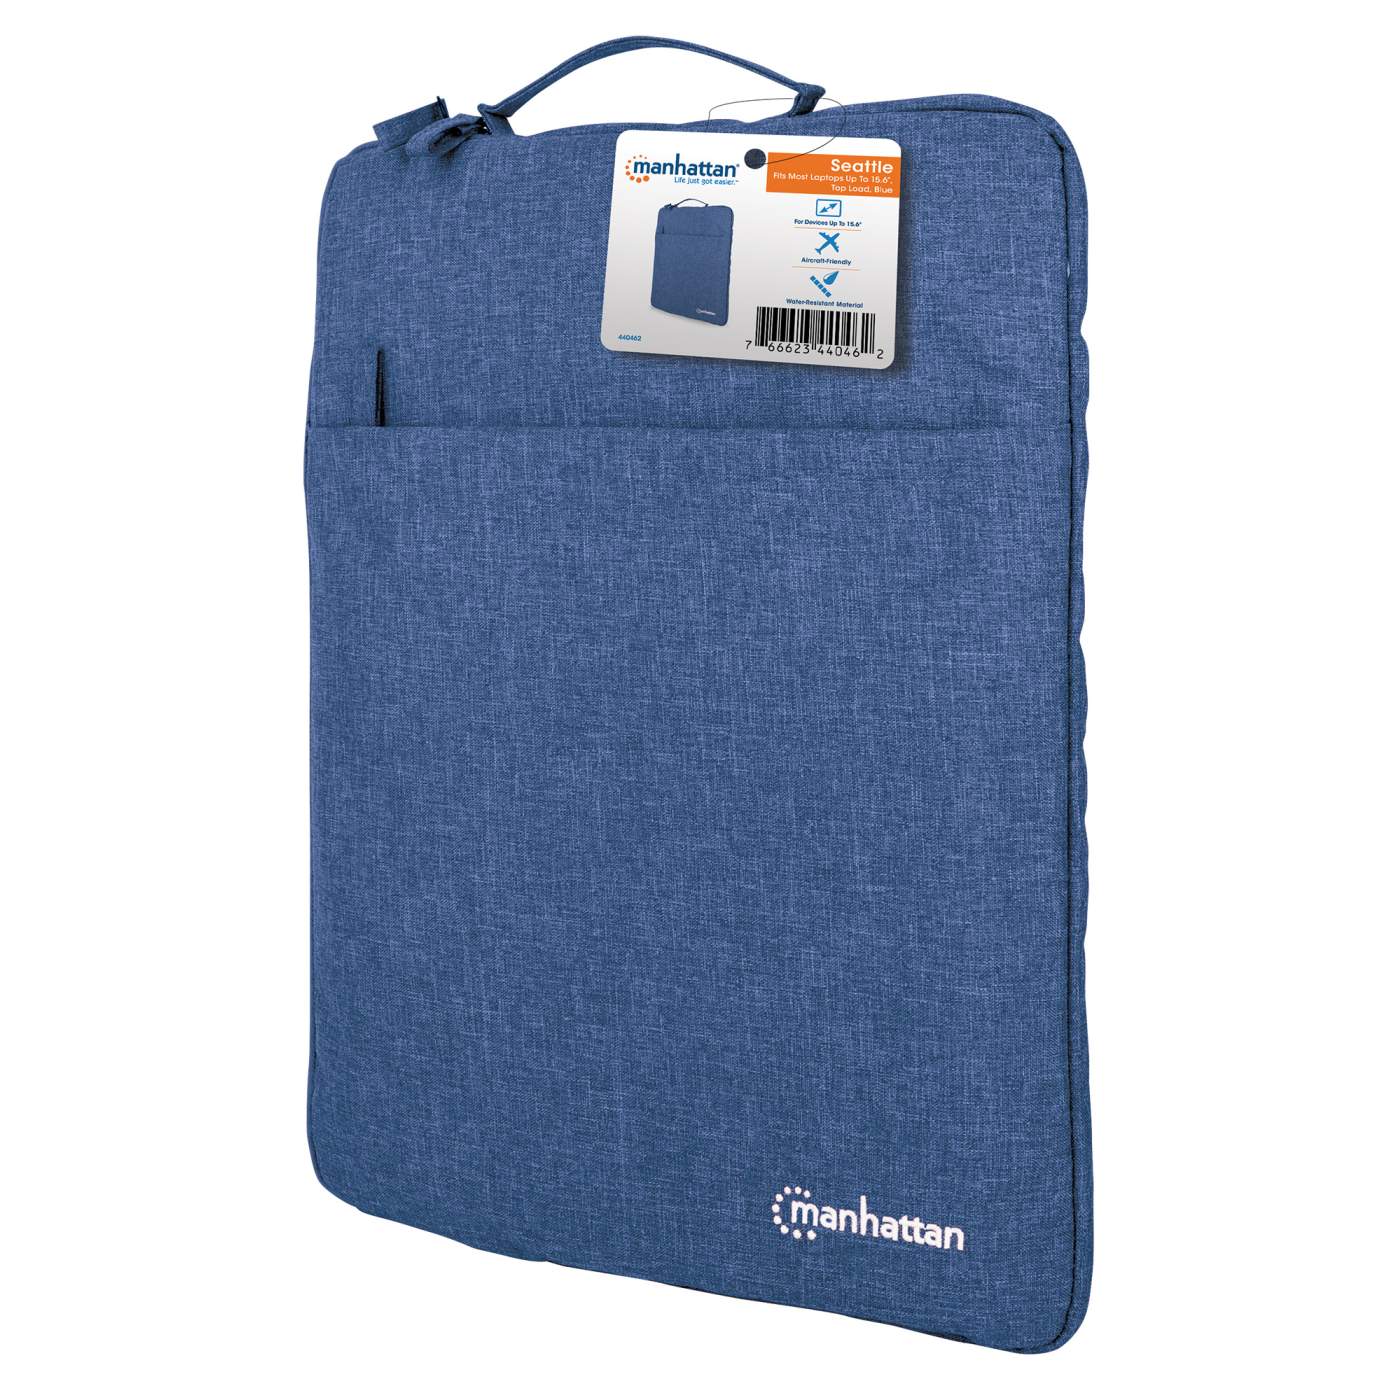 Seattle Notebook Sleeve 15.6" Packaging Image 2